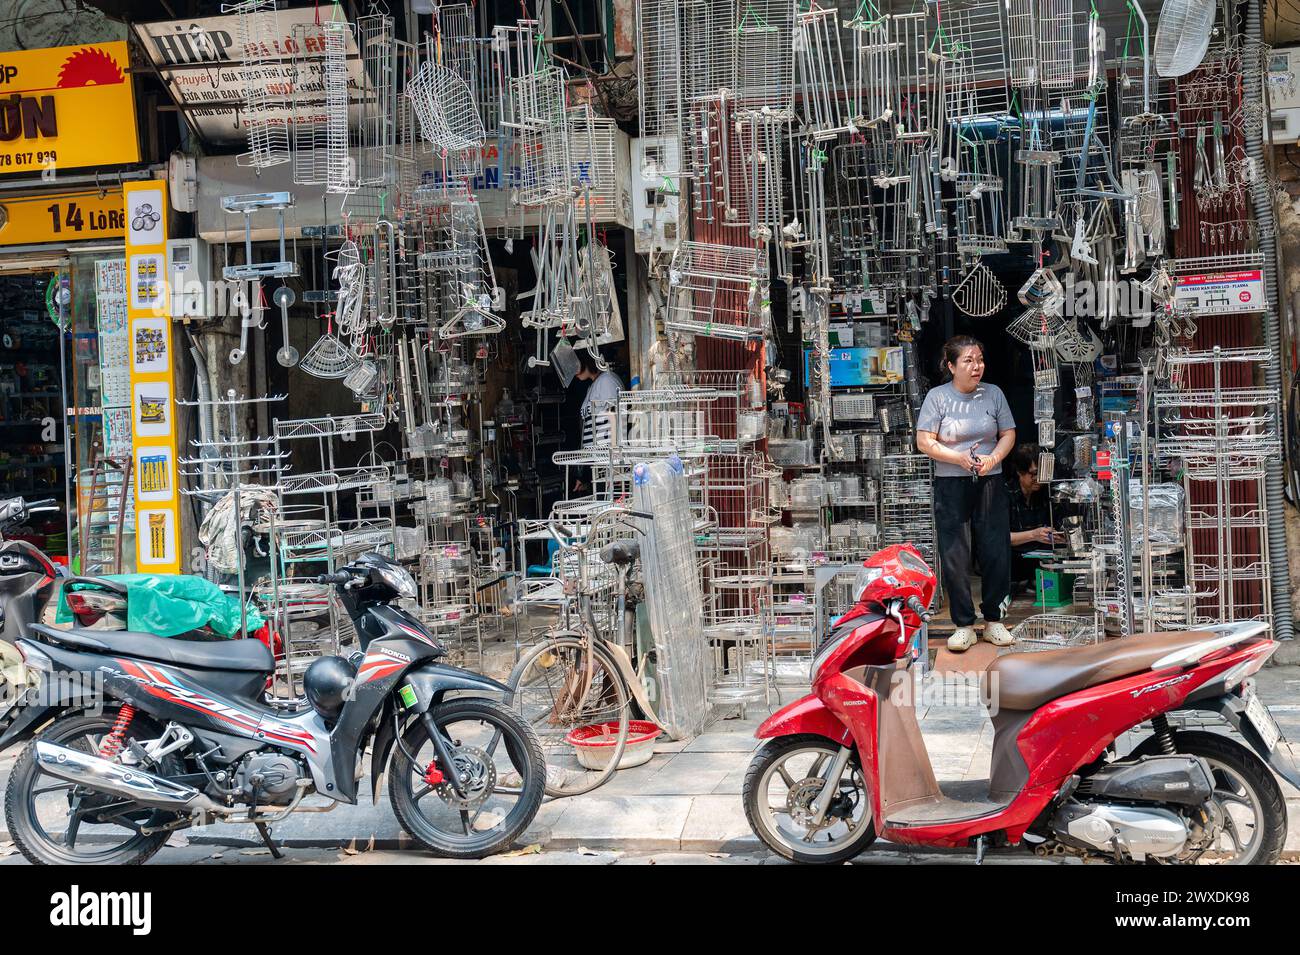 Straßenszenen in Hanoi, Vietnam. Stockfoto